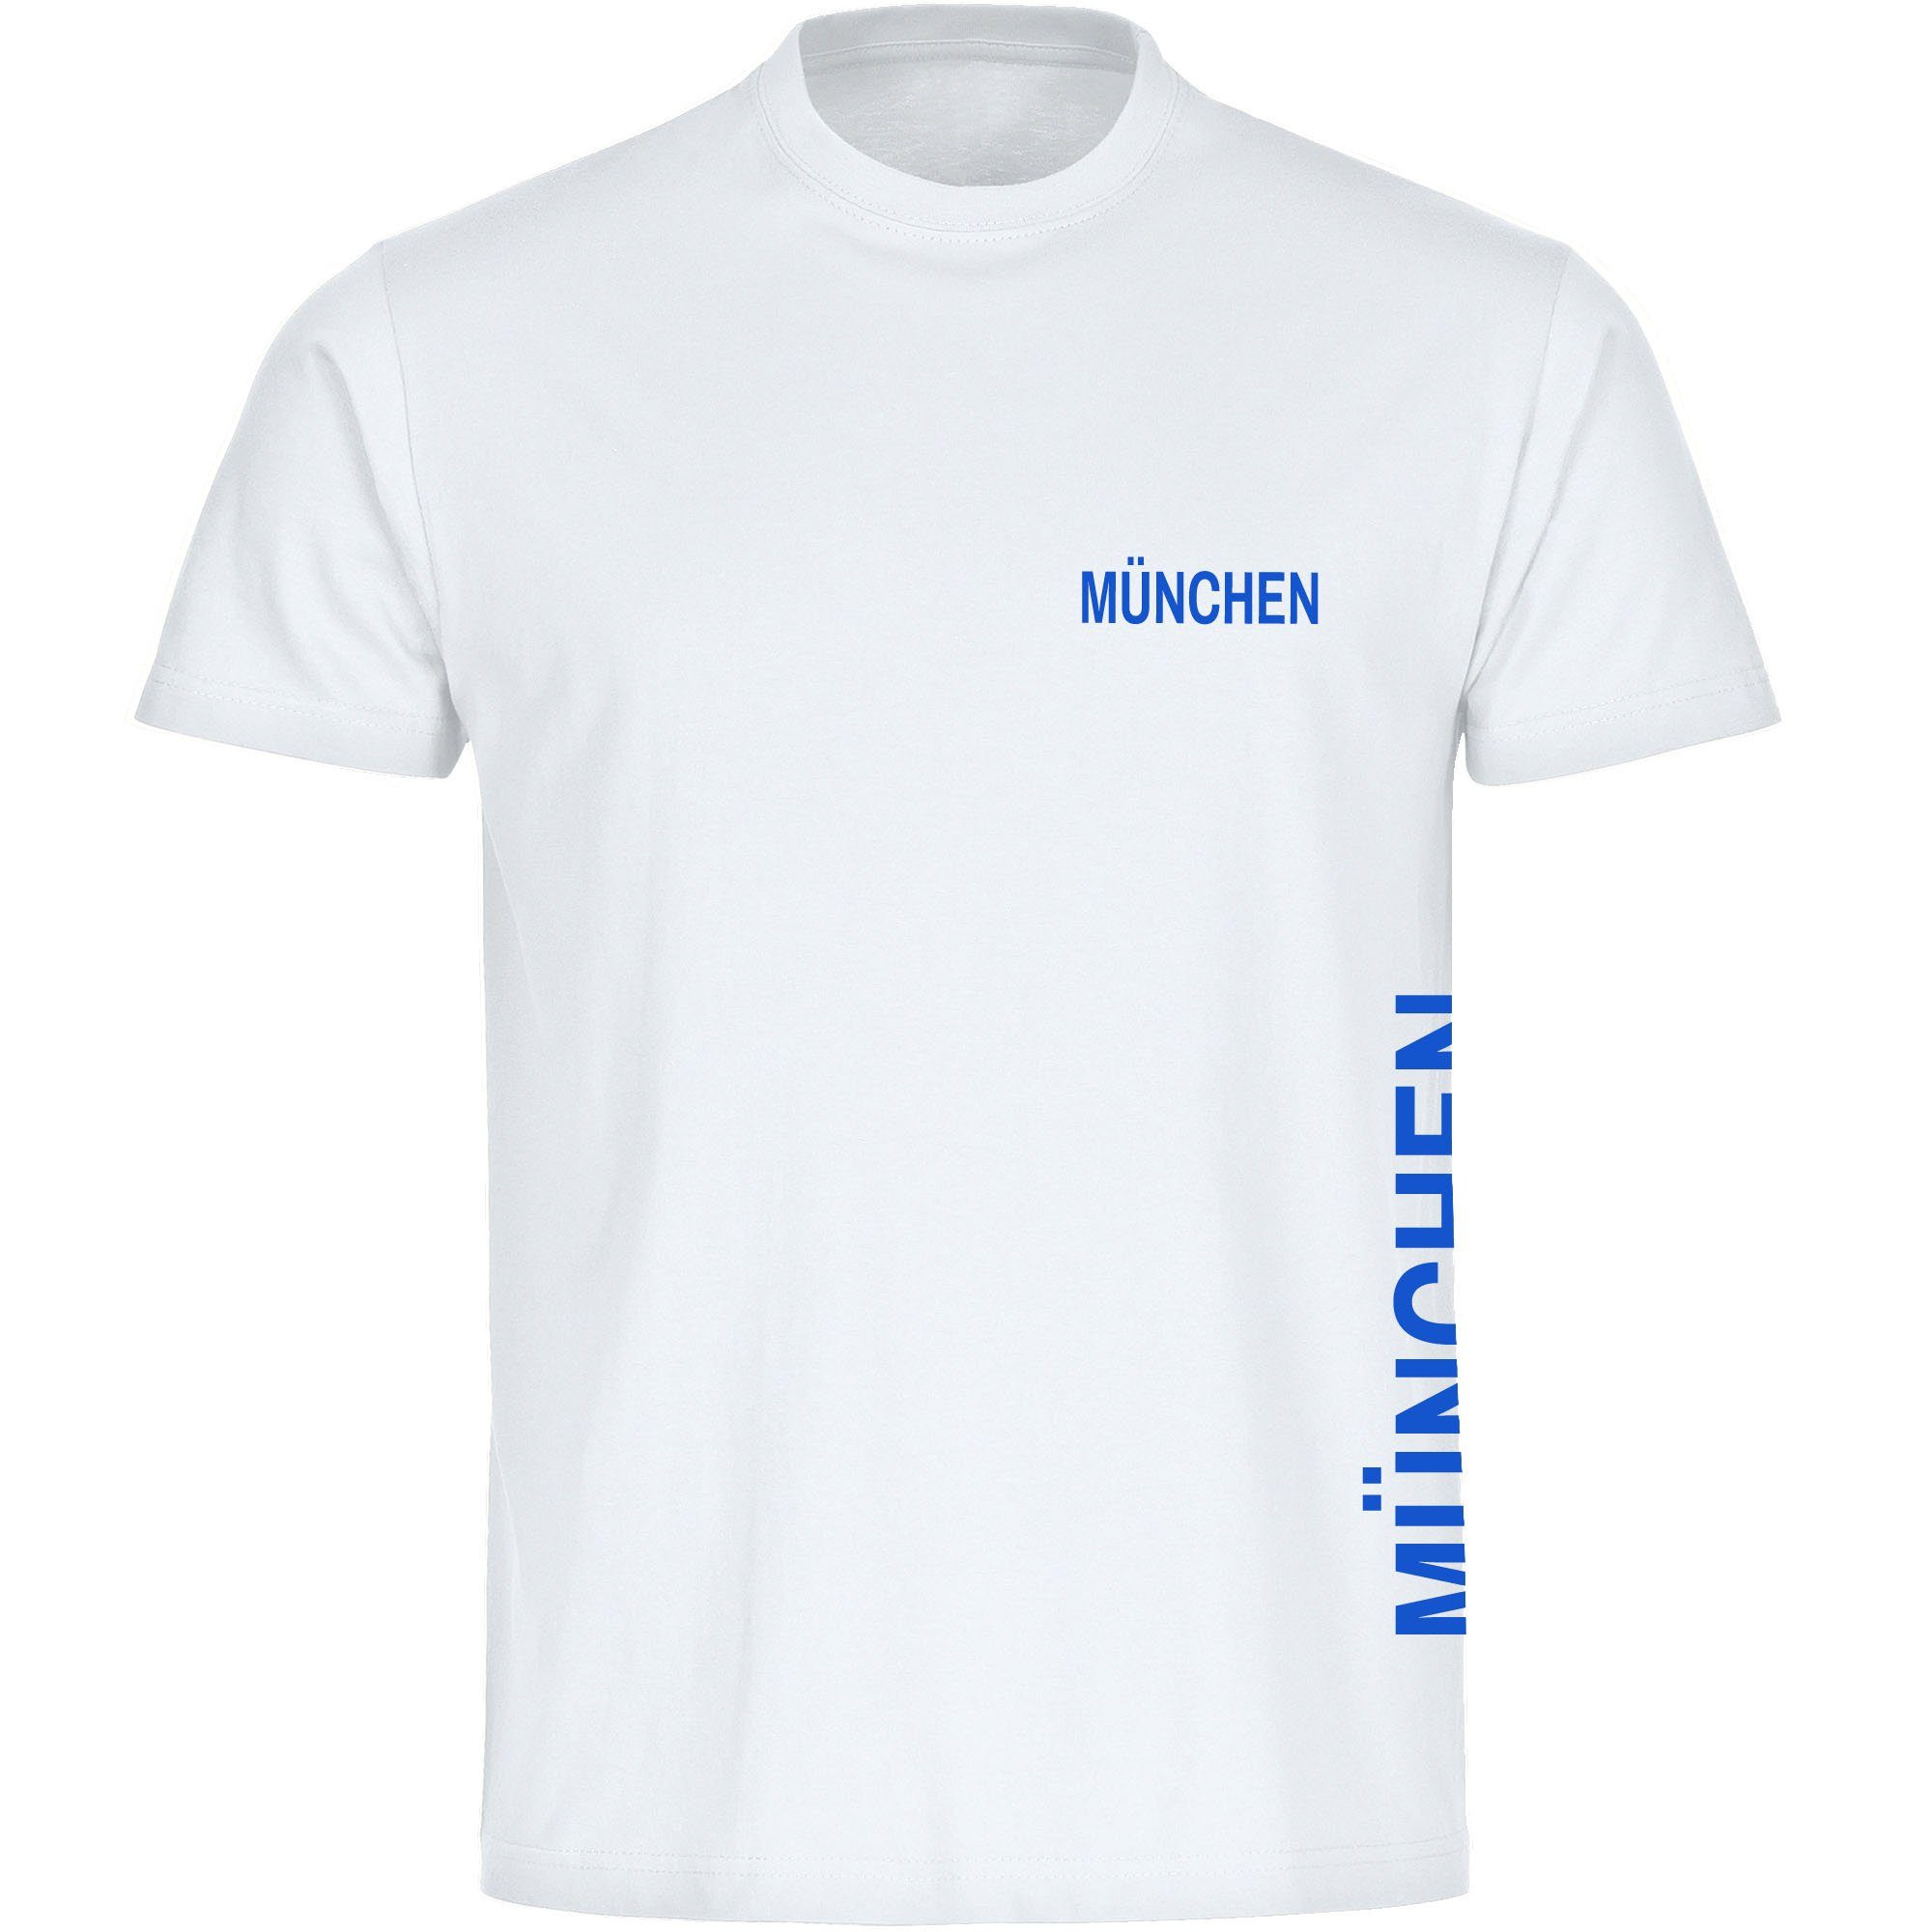 multifanshop T-Shirt Herren München blau - Brust & Seite - Männer